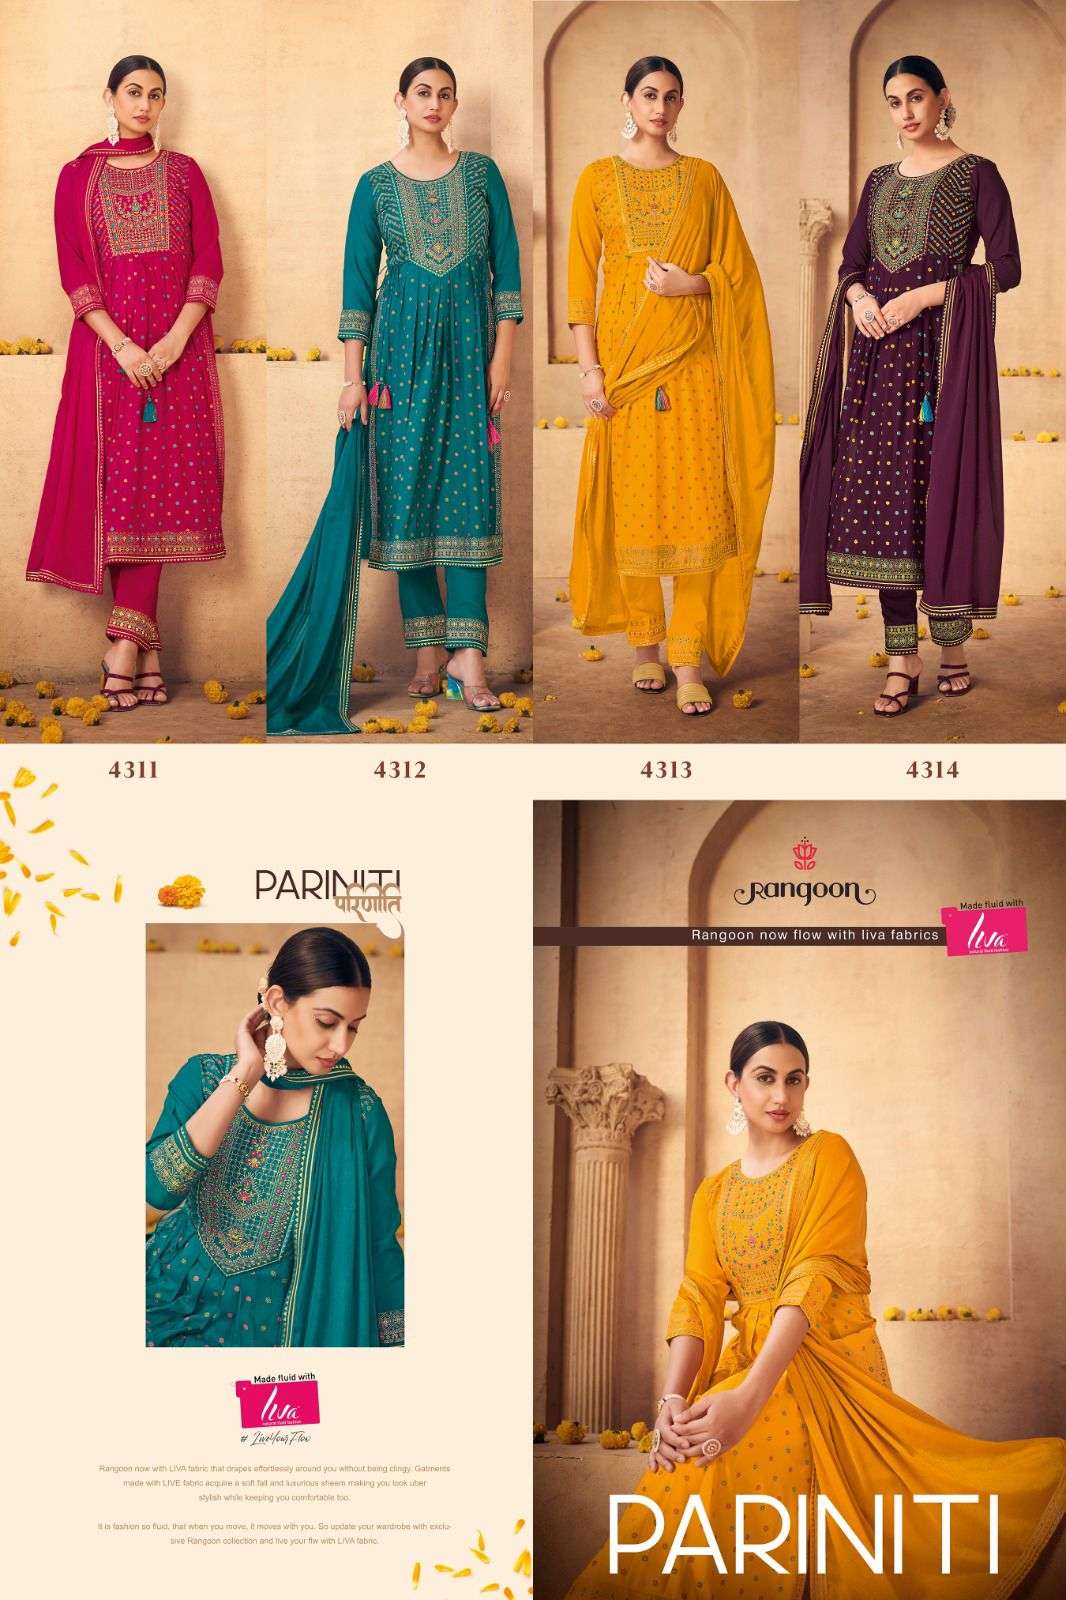 rangoon pariniti 4311-4314 series stylish look designer kurtis catalogue online market surat